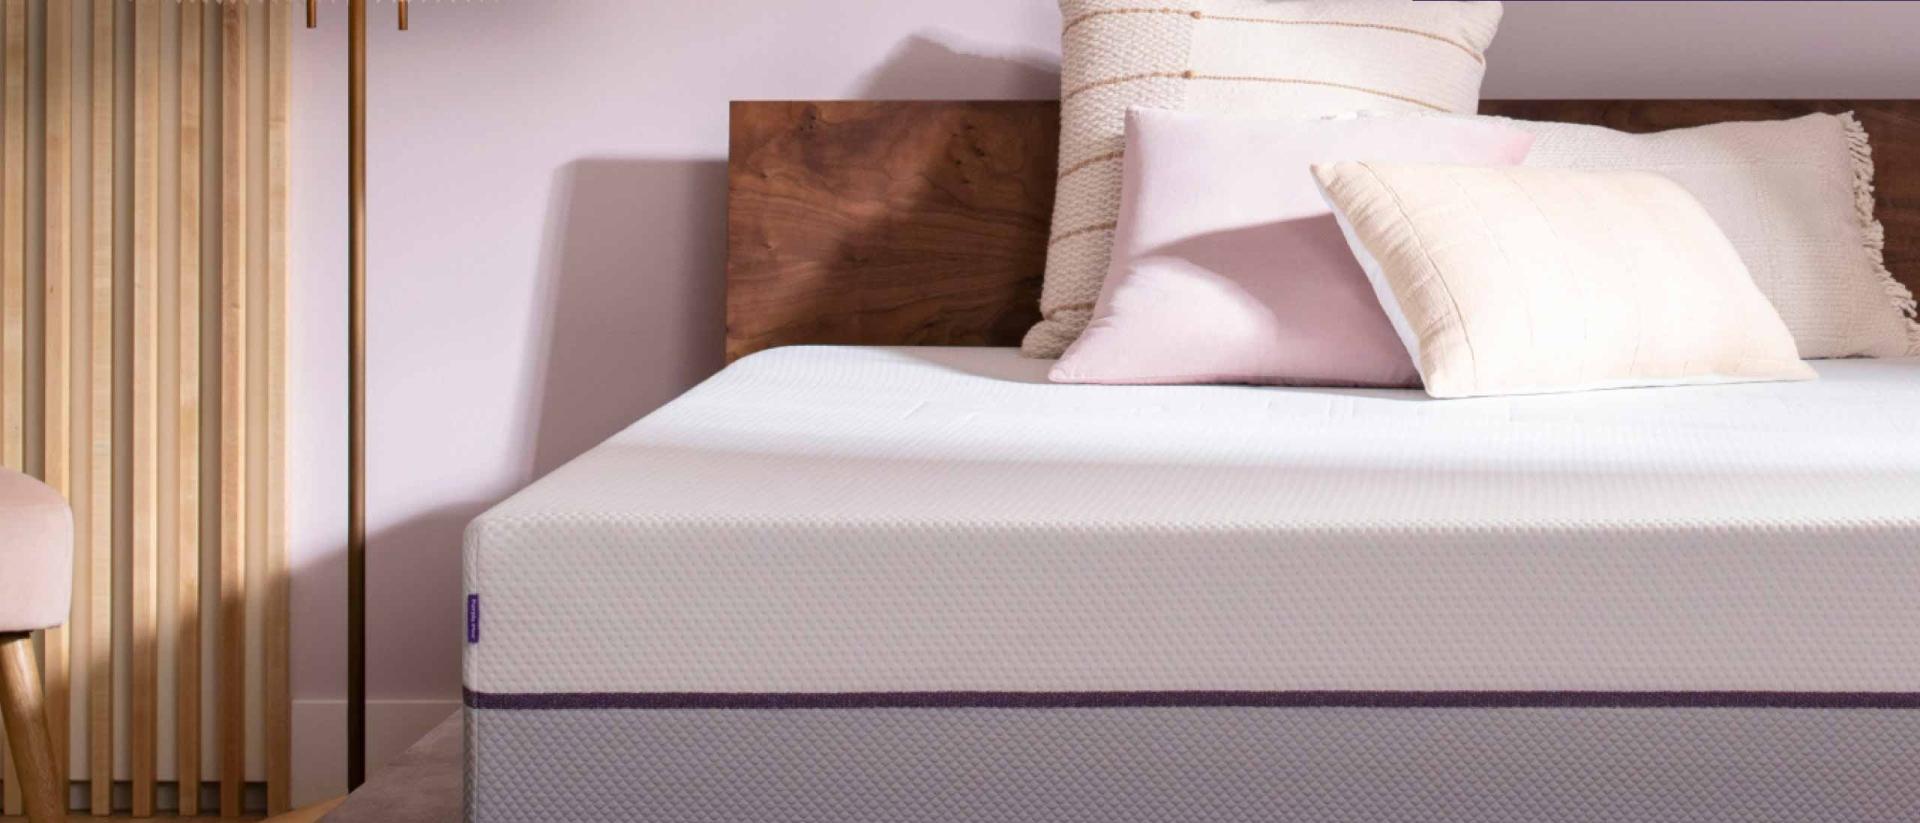 Purple mattress in a dark wood platform bed foundation.